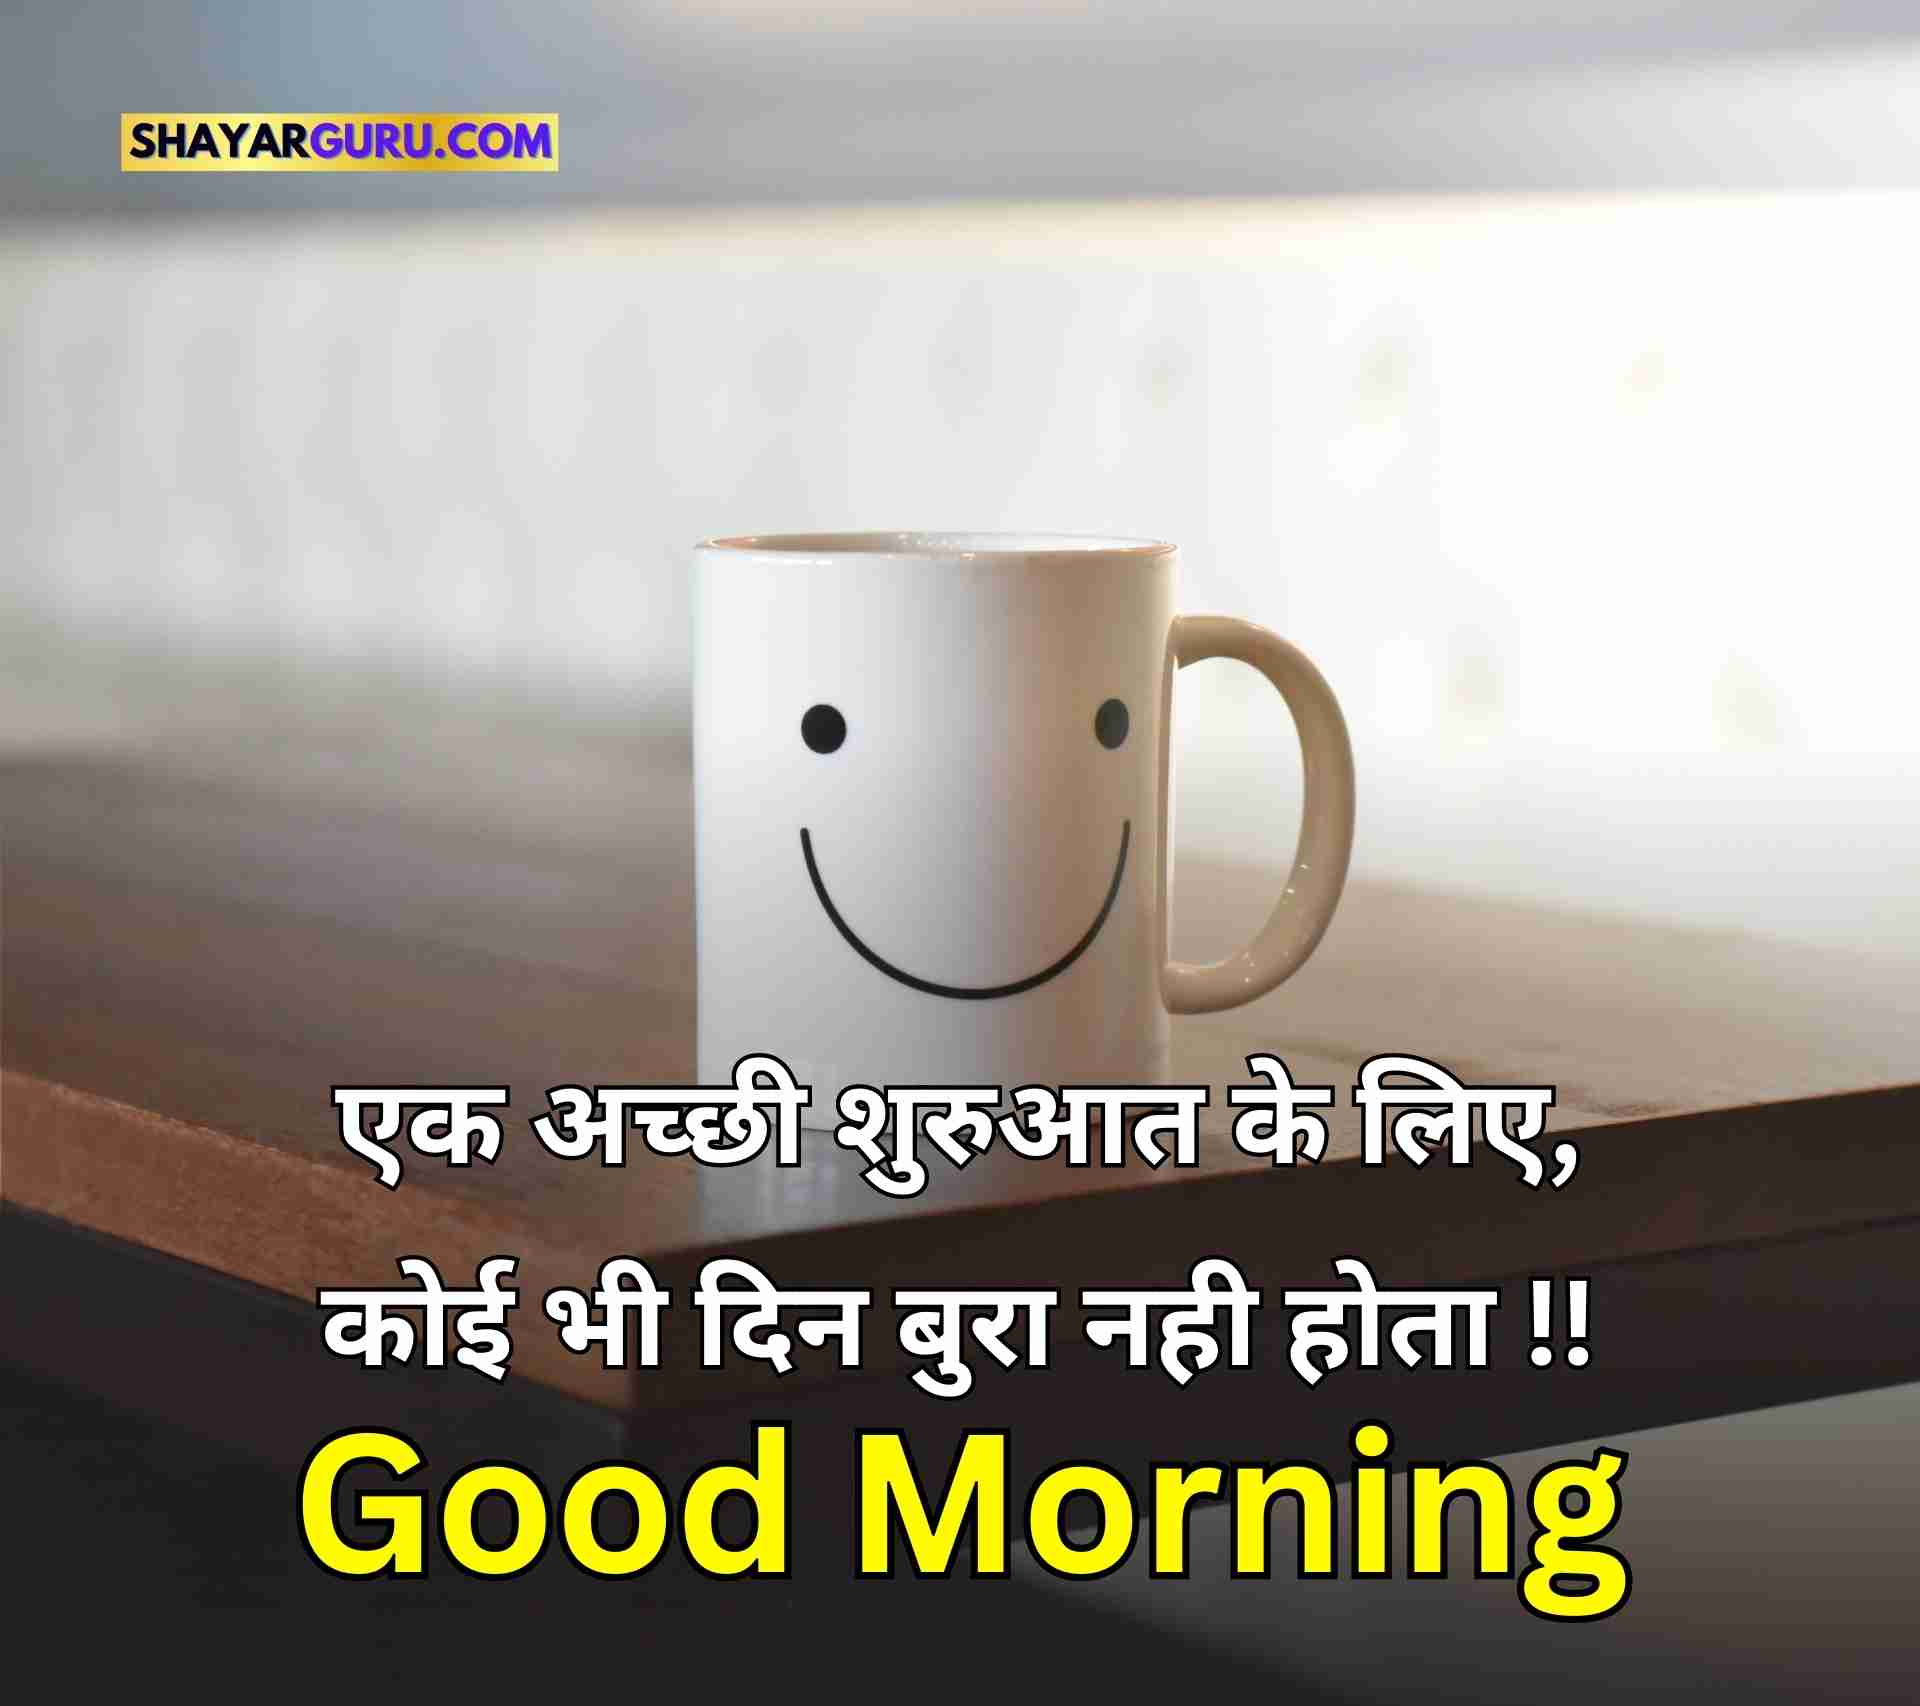 Good Morning Quotes Hindi Image